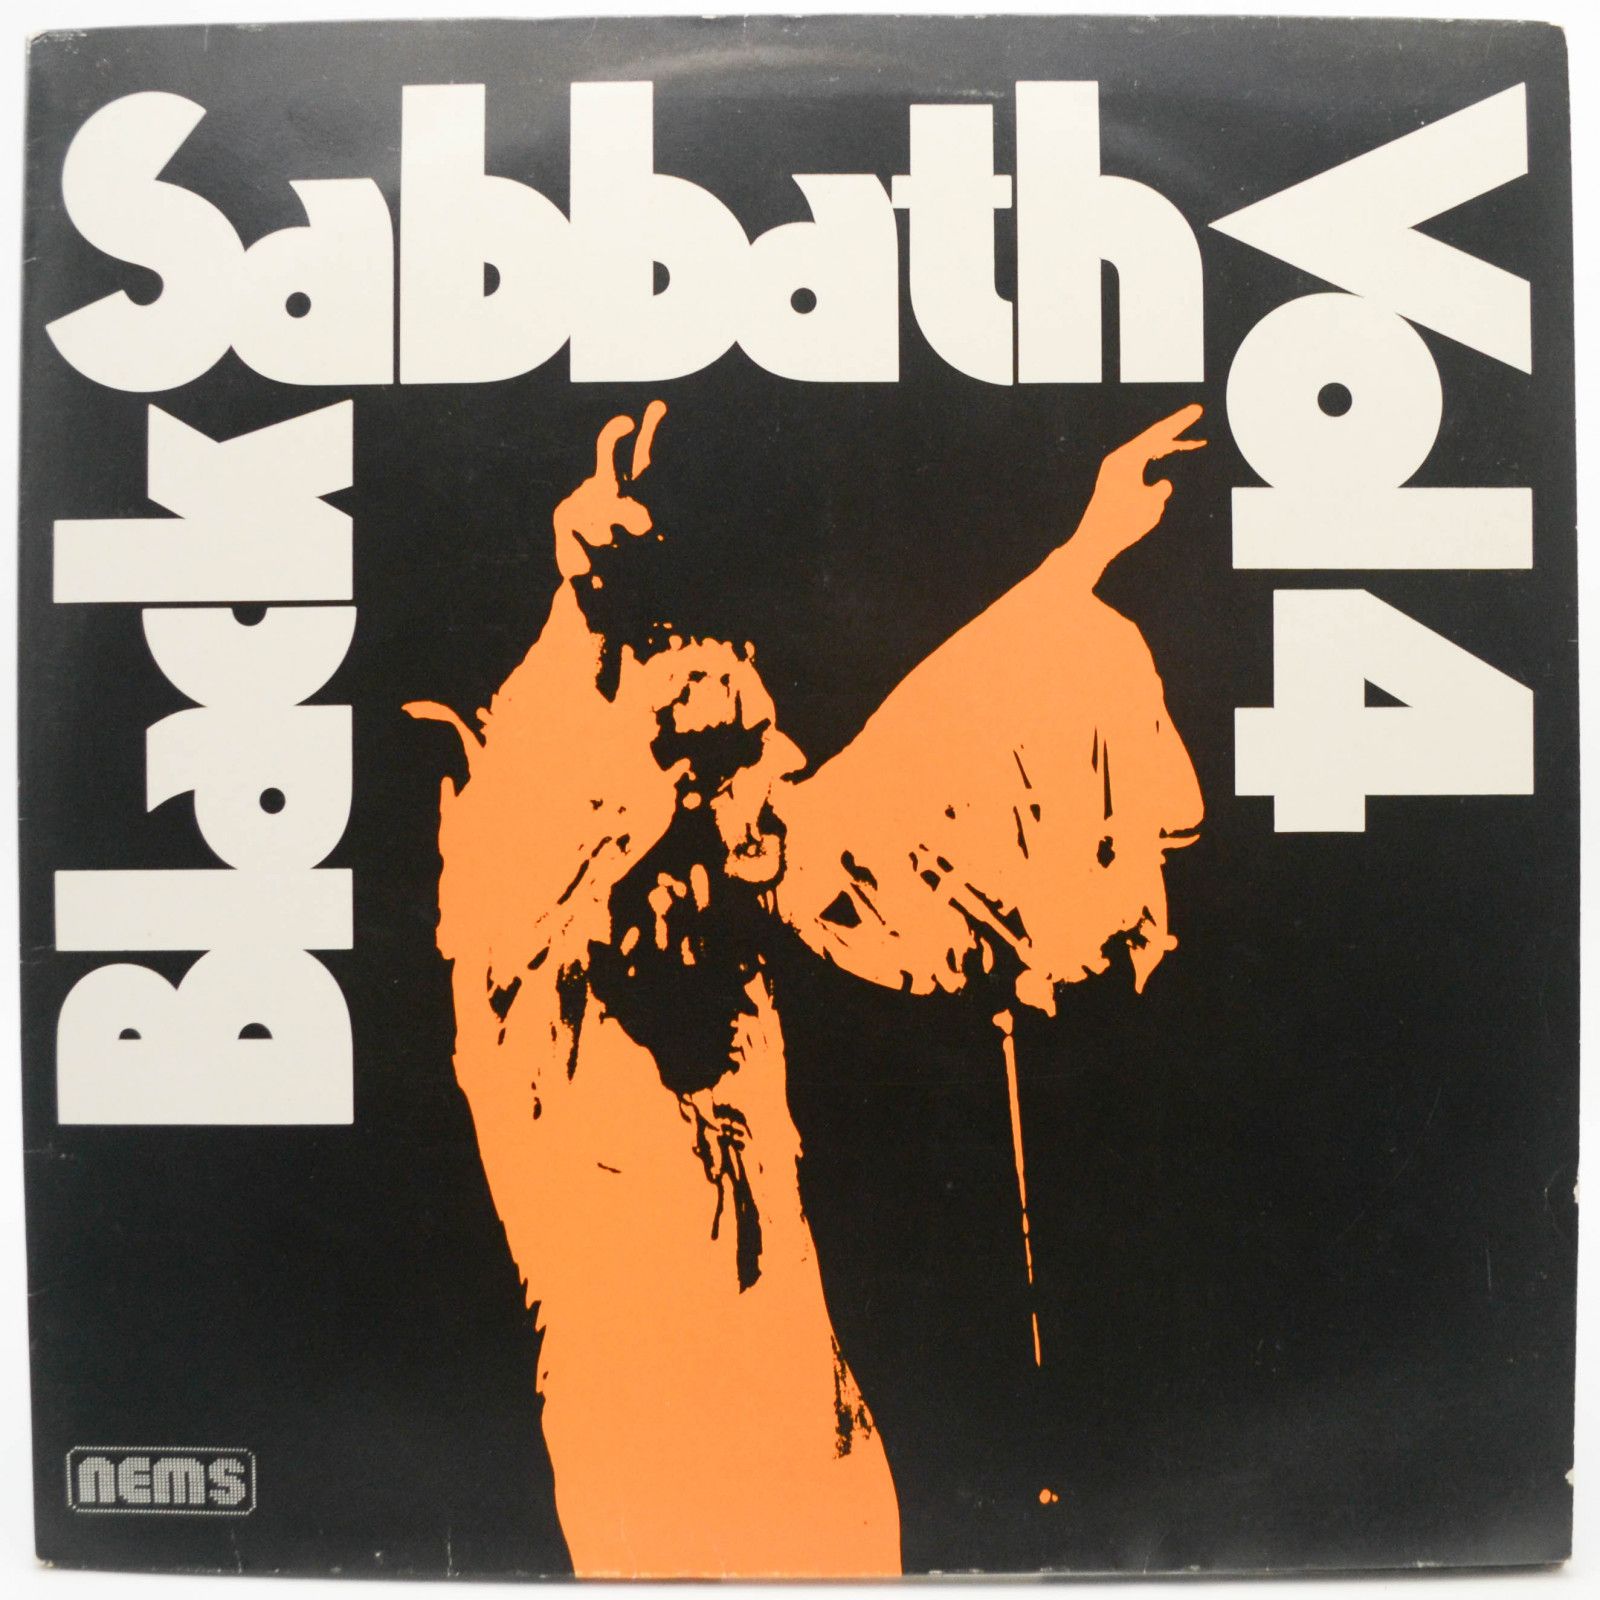 Black Sabbath — Black Sabbath Vol 4 (booklet), 1972